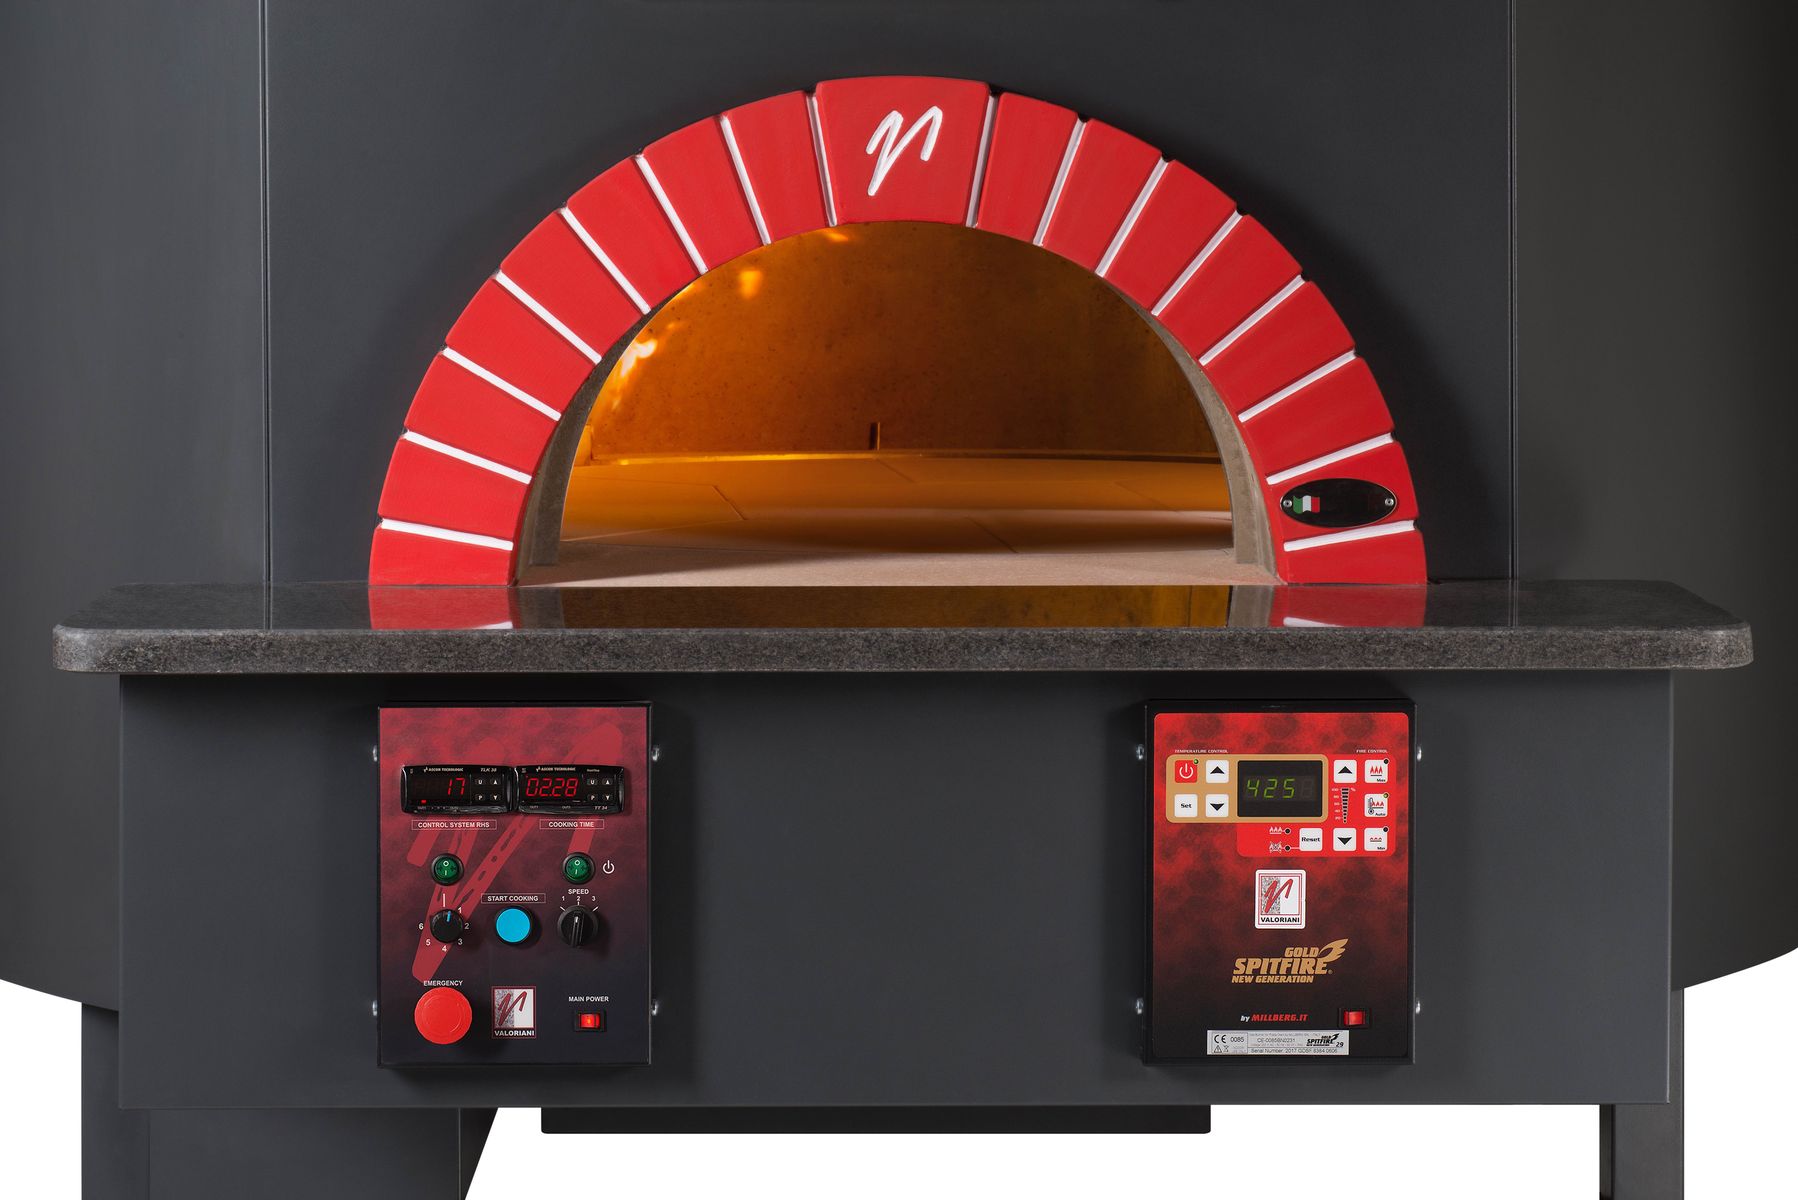 The Valoriani Rotativo, rotating pizza oven